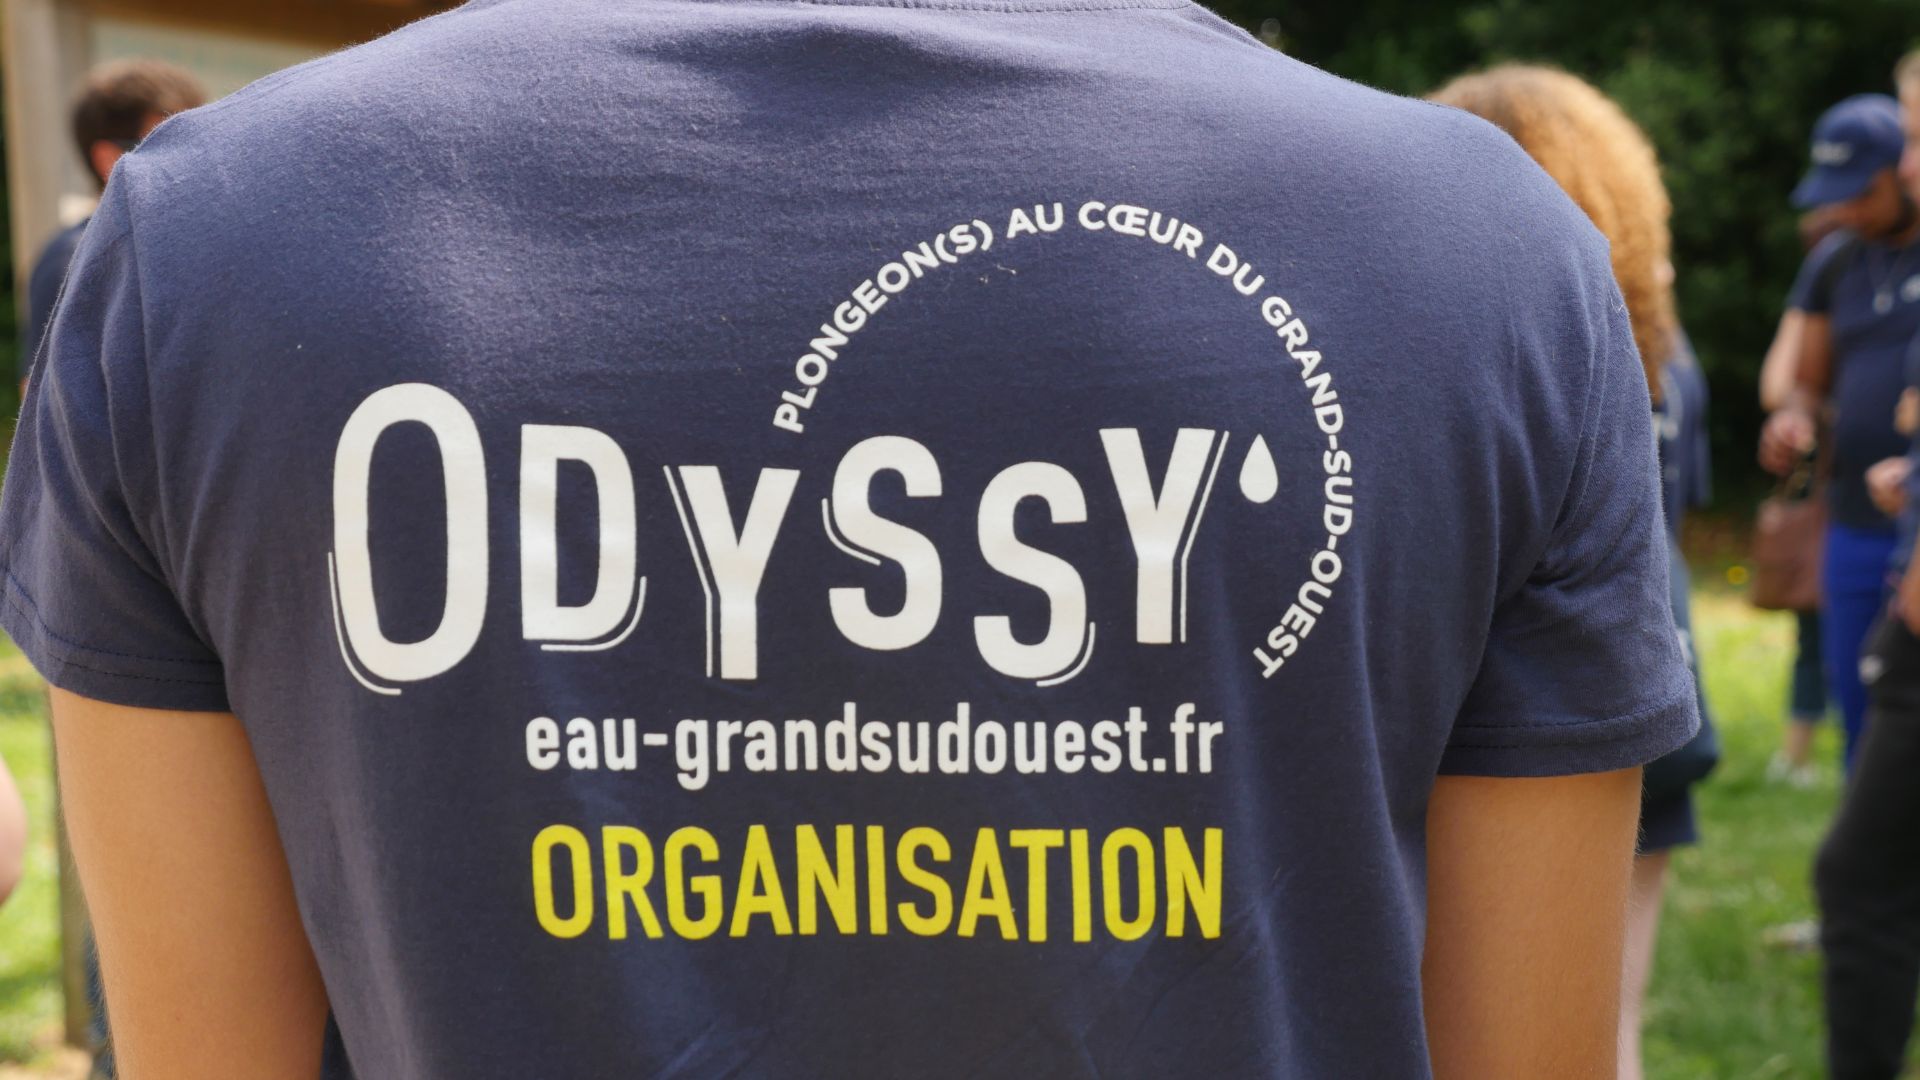 Odyssy evenement sportif et pédagogique par l'agence de l'eau adour garonne